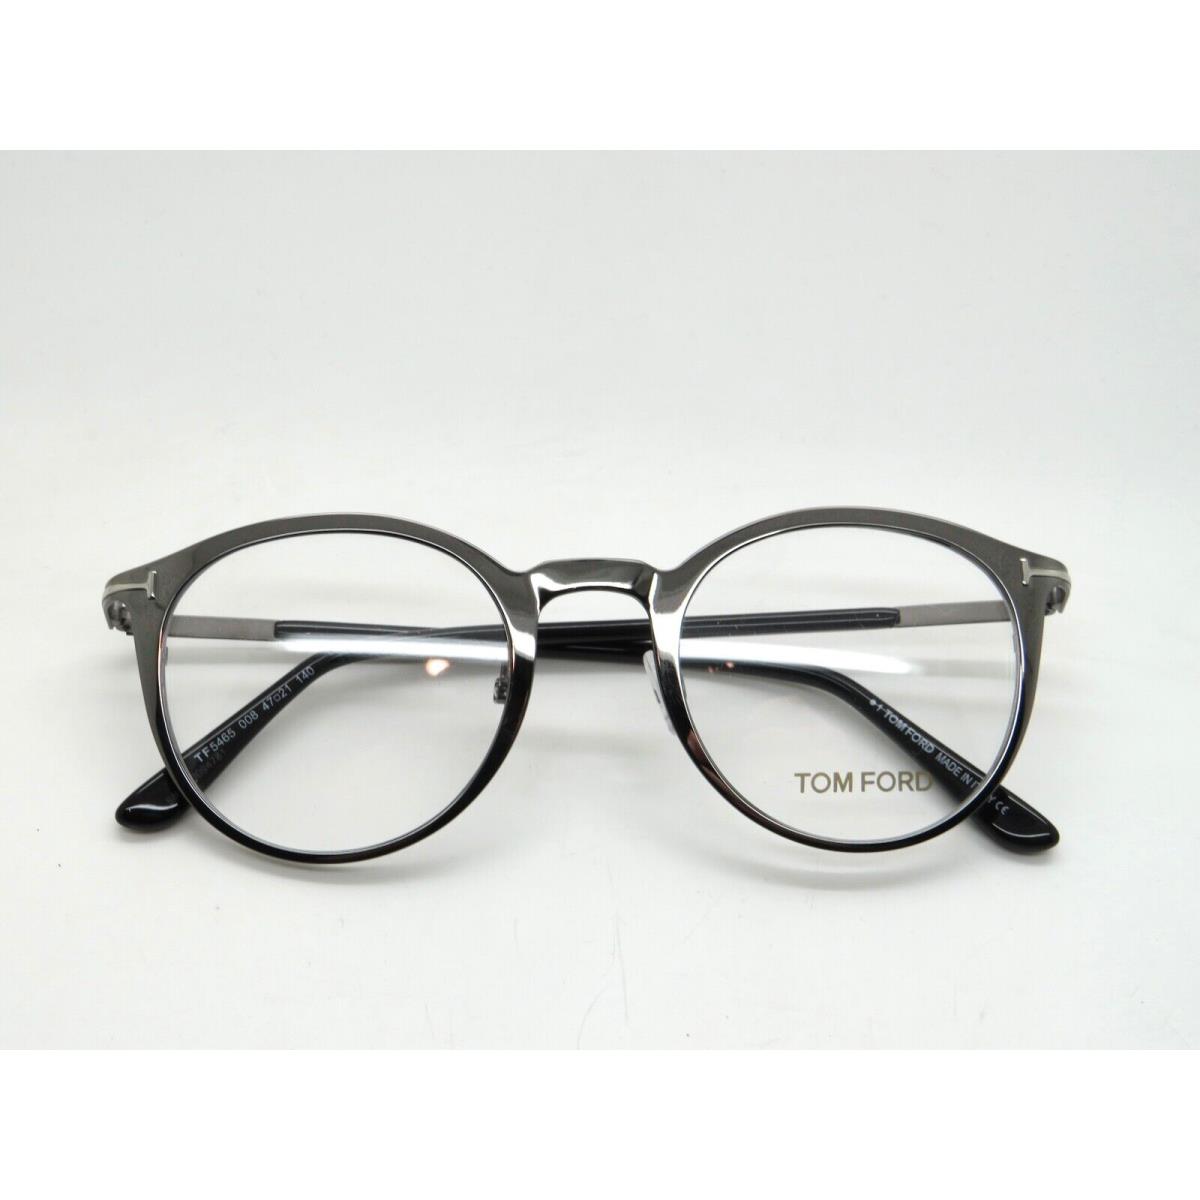 Tom Ford eyeglasses  - Gunmetal Frame 0